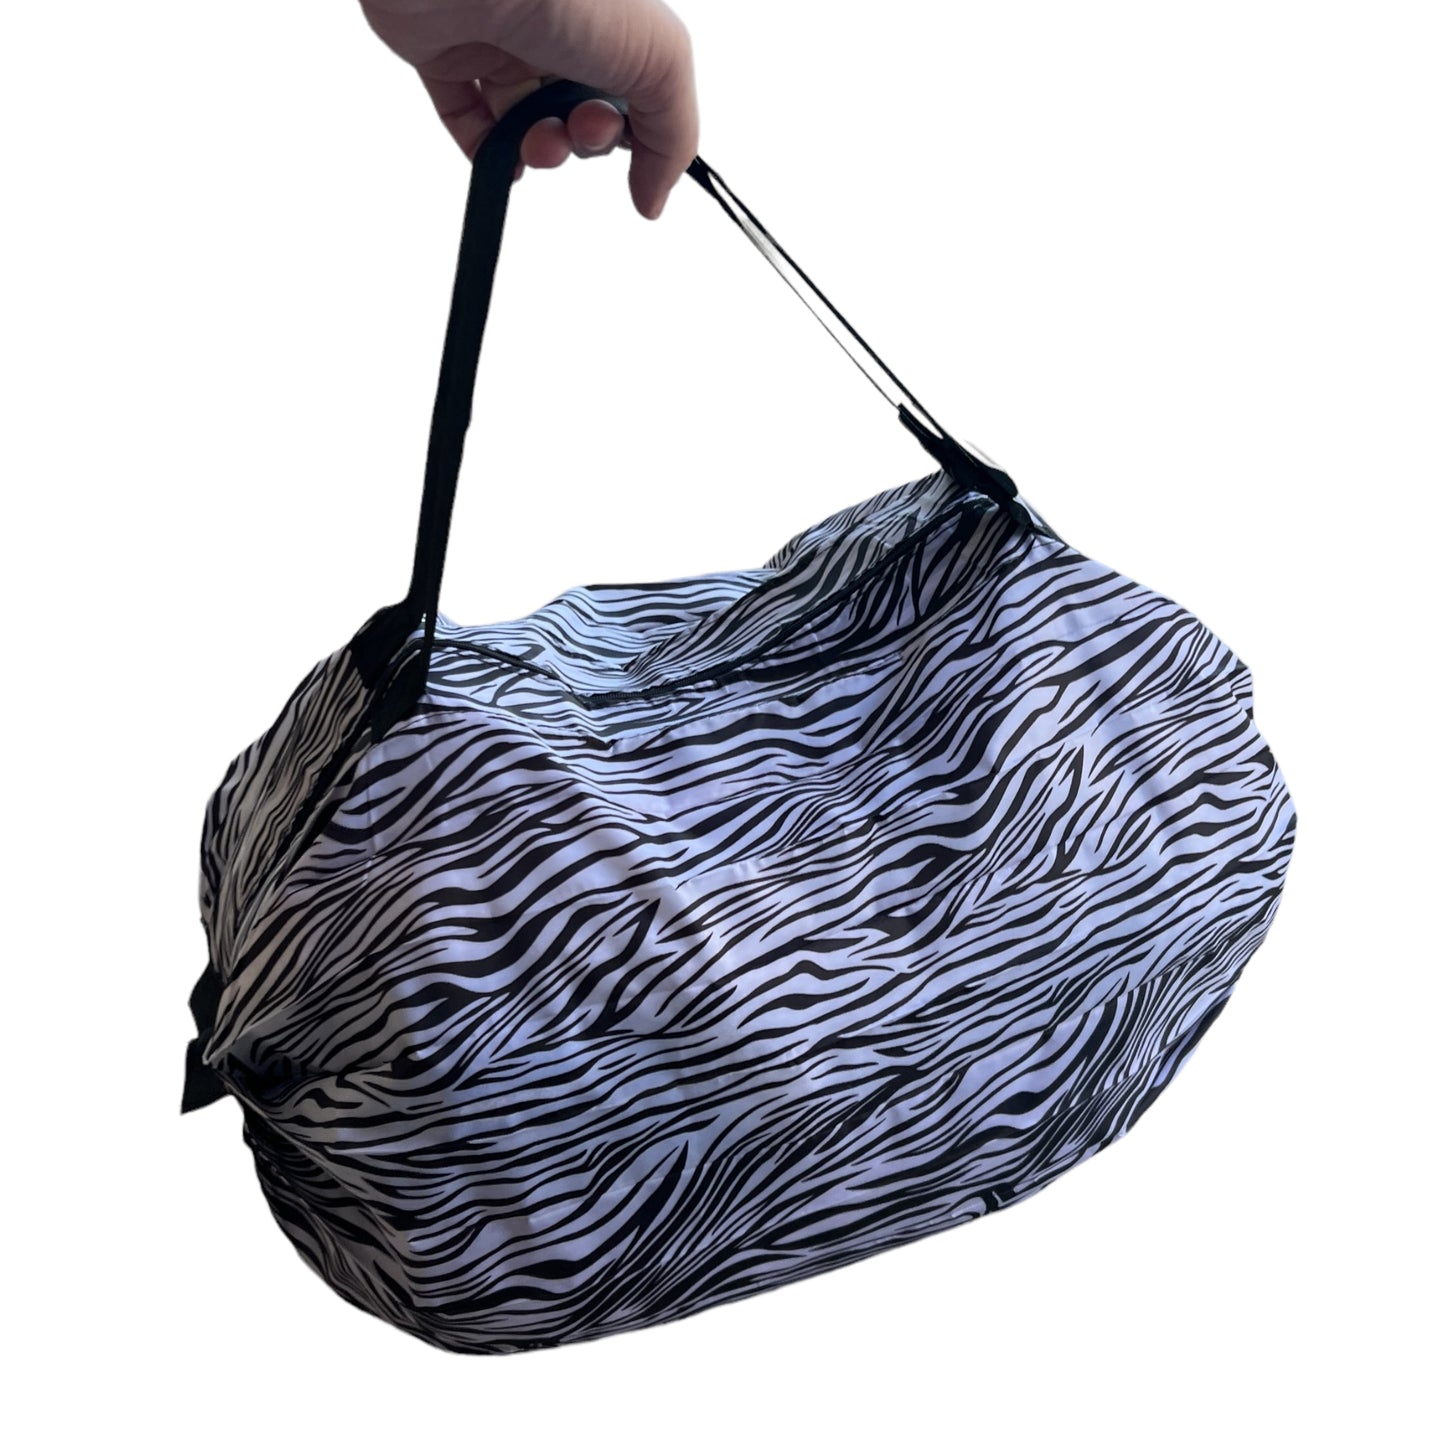 Large Foldable Shopping / Travel Bag